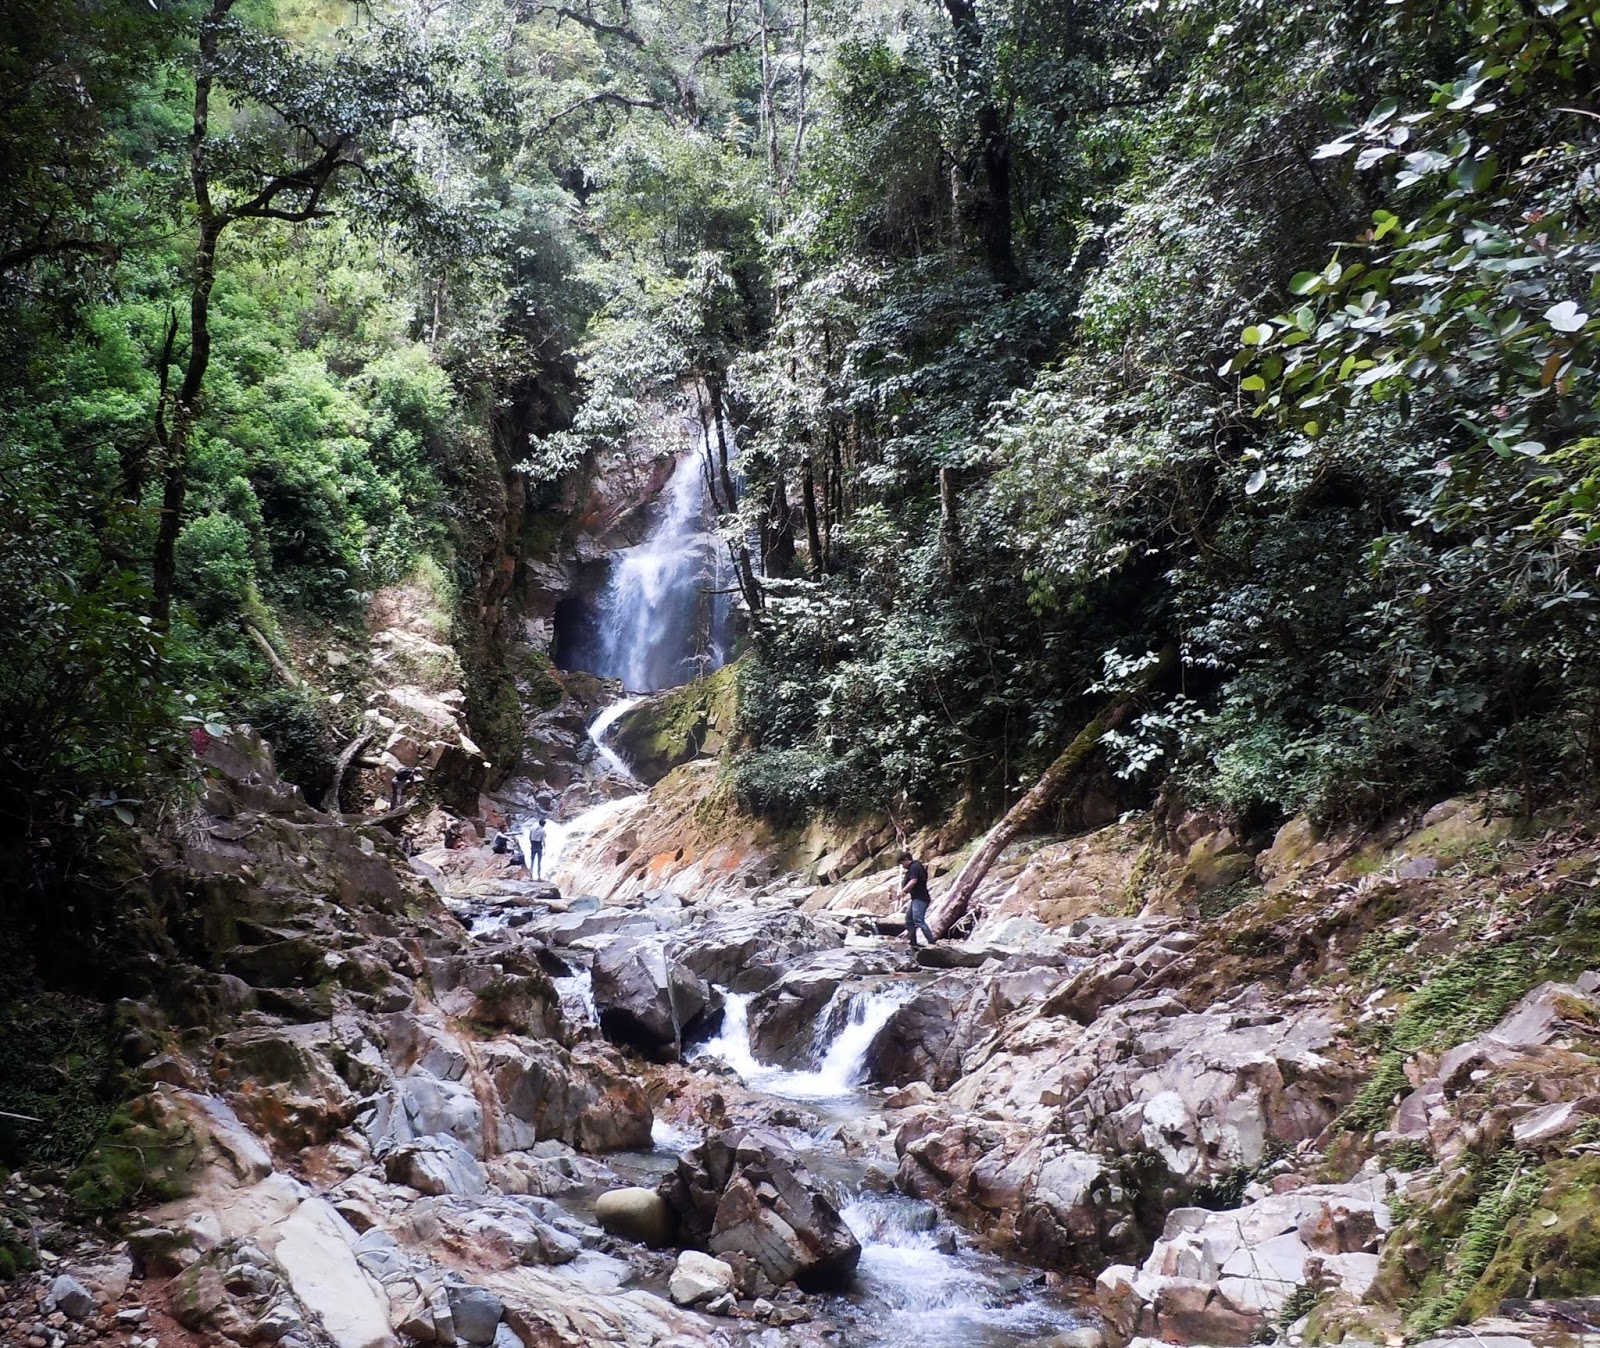 Objek Wisata Baru di Kecamatan Gunung Meriah, Air Terjun